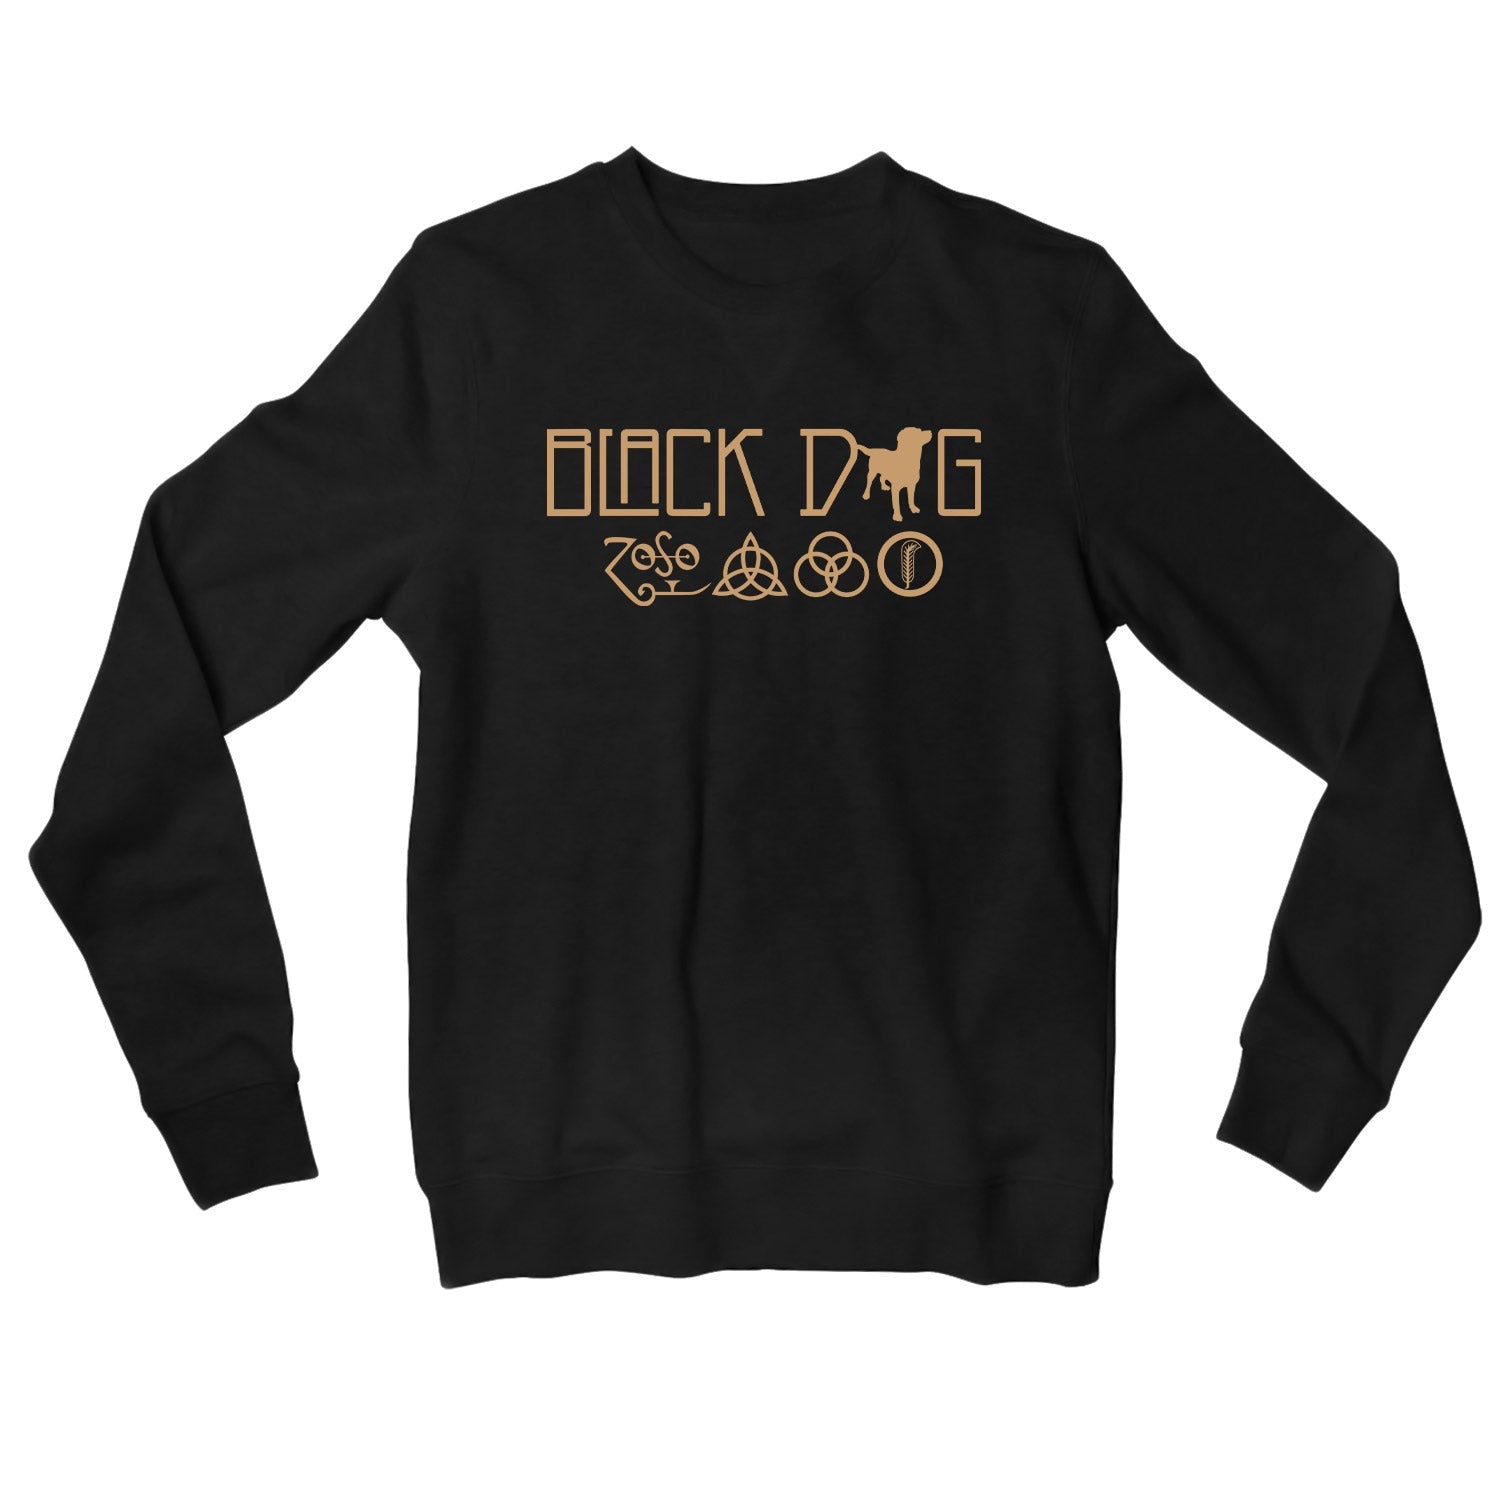 Led Zeppelin Sweatshirt - Black Dog Sweatshirt The Banyan Tee TBT